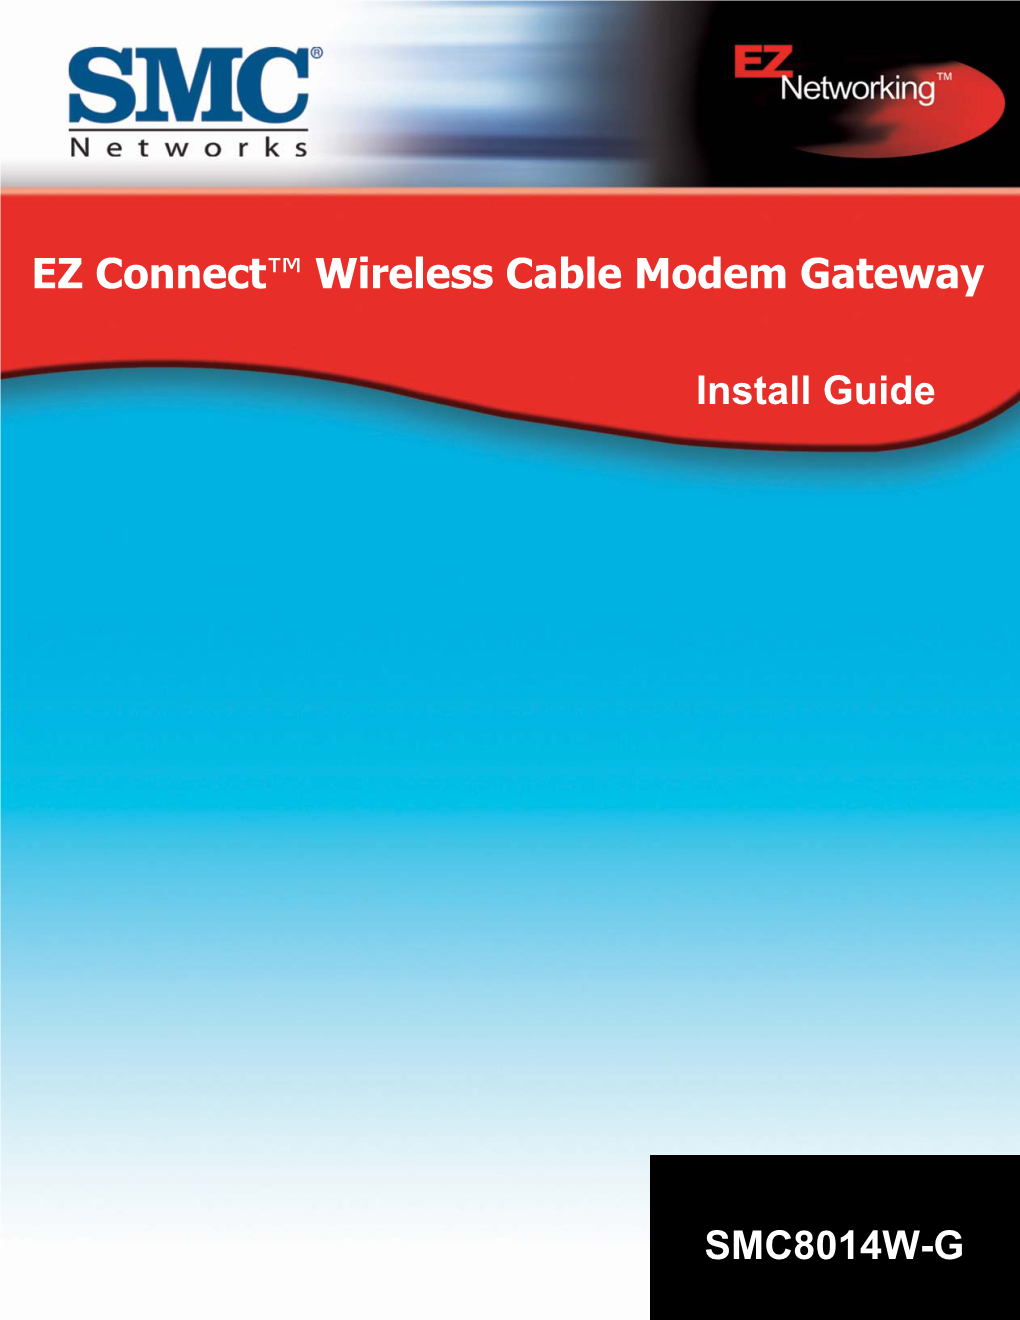 EZ Connect™ Wireless Cable Modem Gateway